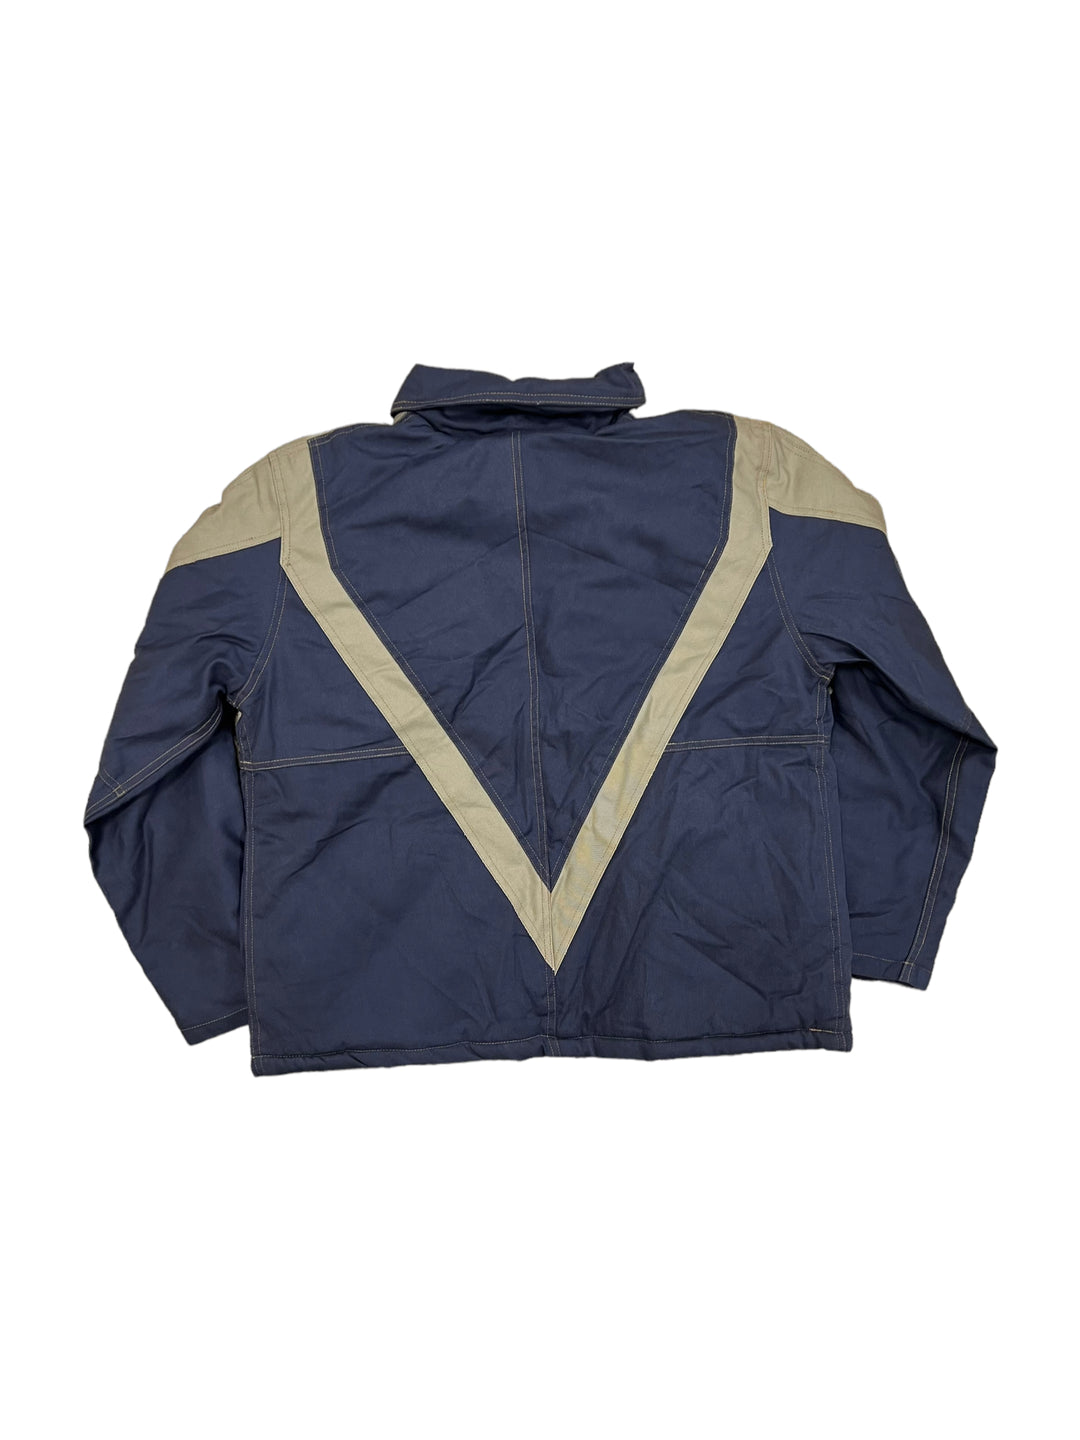 Vintage Reworked Carhartt Detroit Work Jacket Men’s S/M